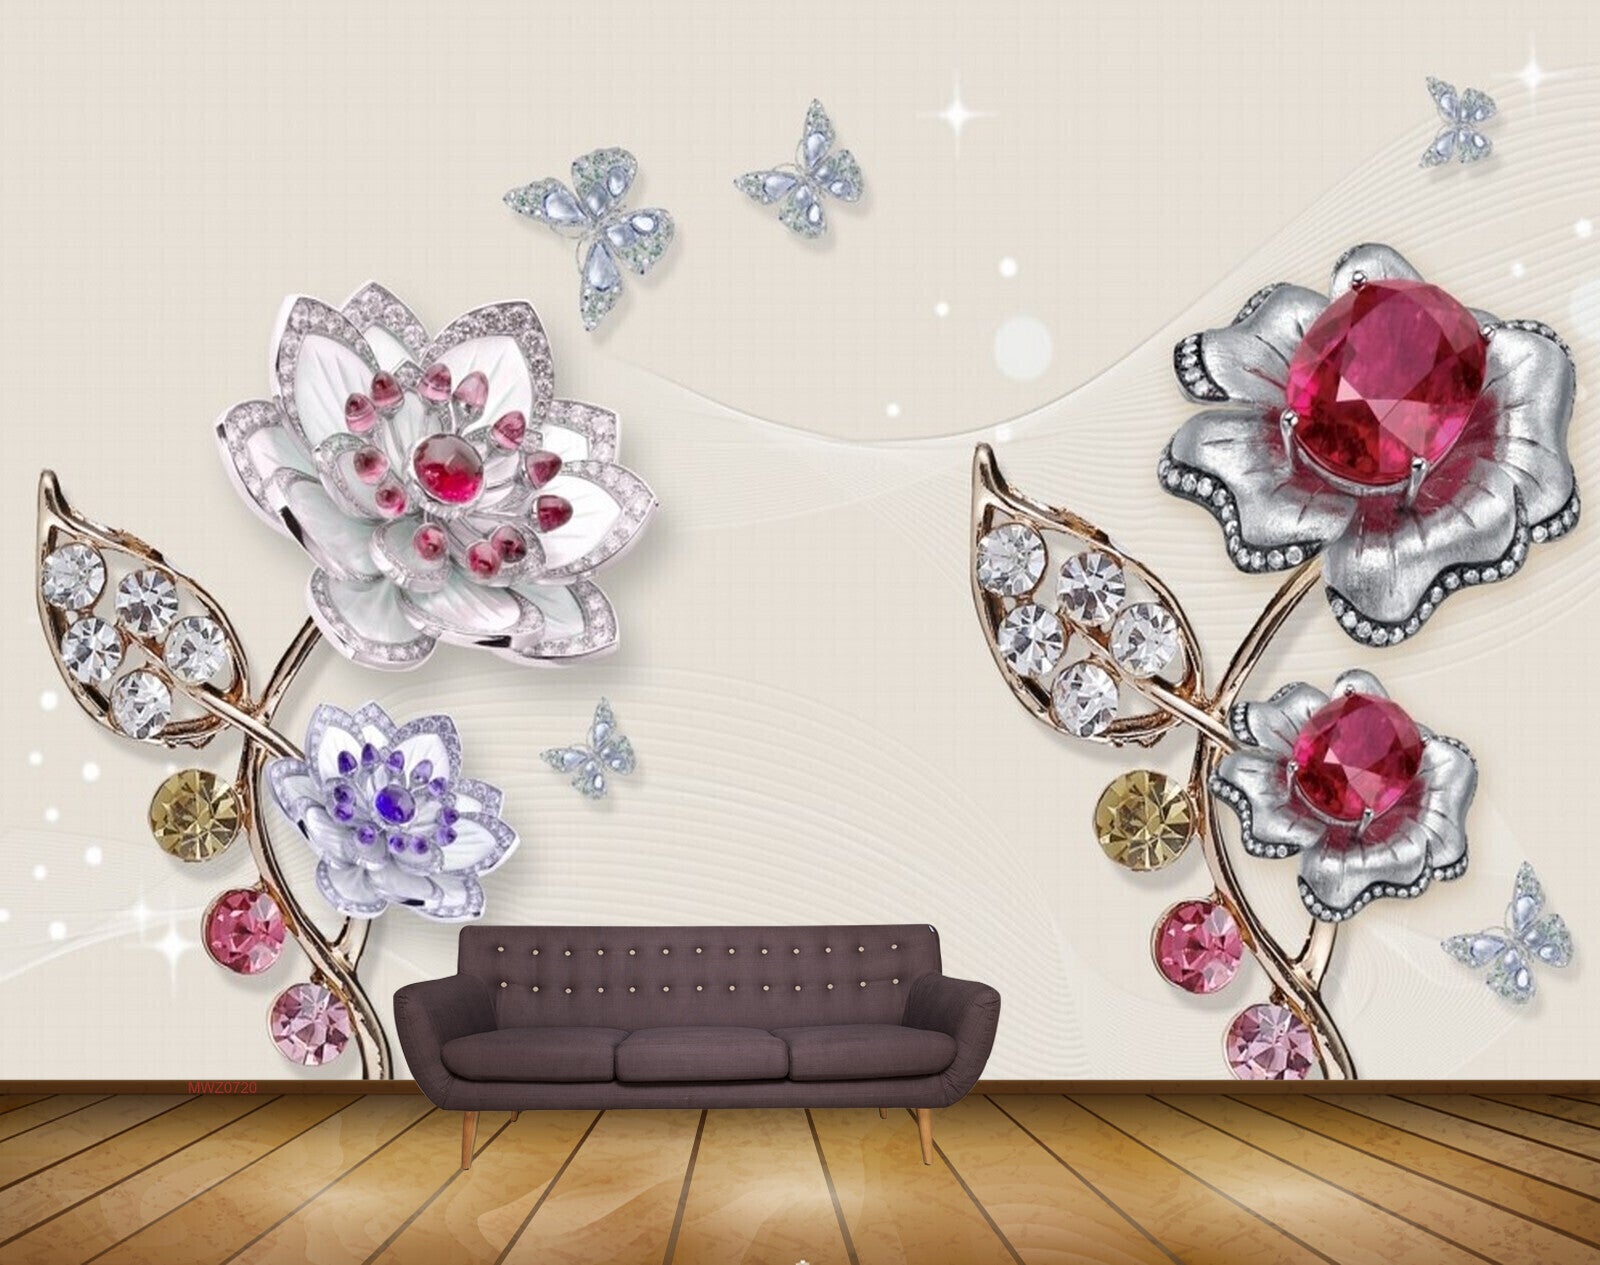 Avikalp MWZ0720 White Pink Flowers Butterflies 3D HD Wallpaper